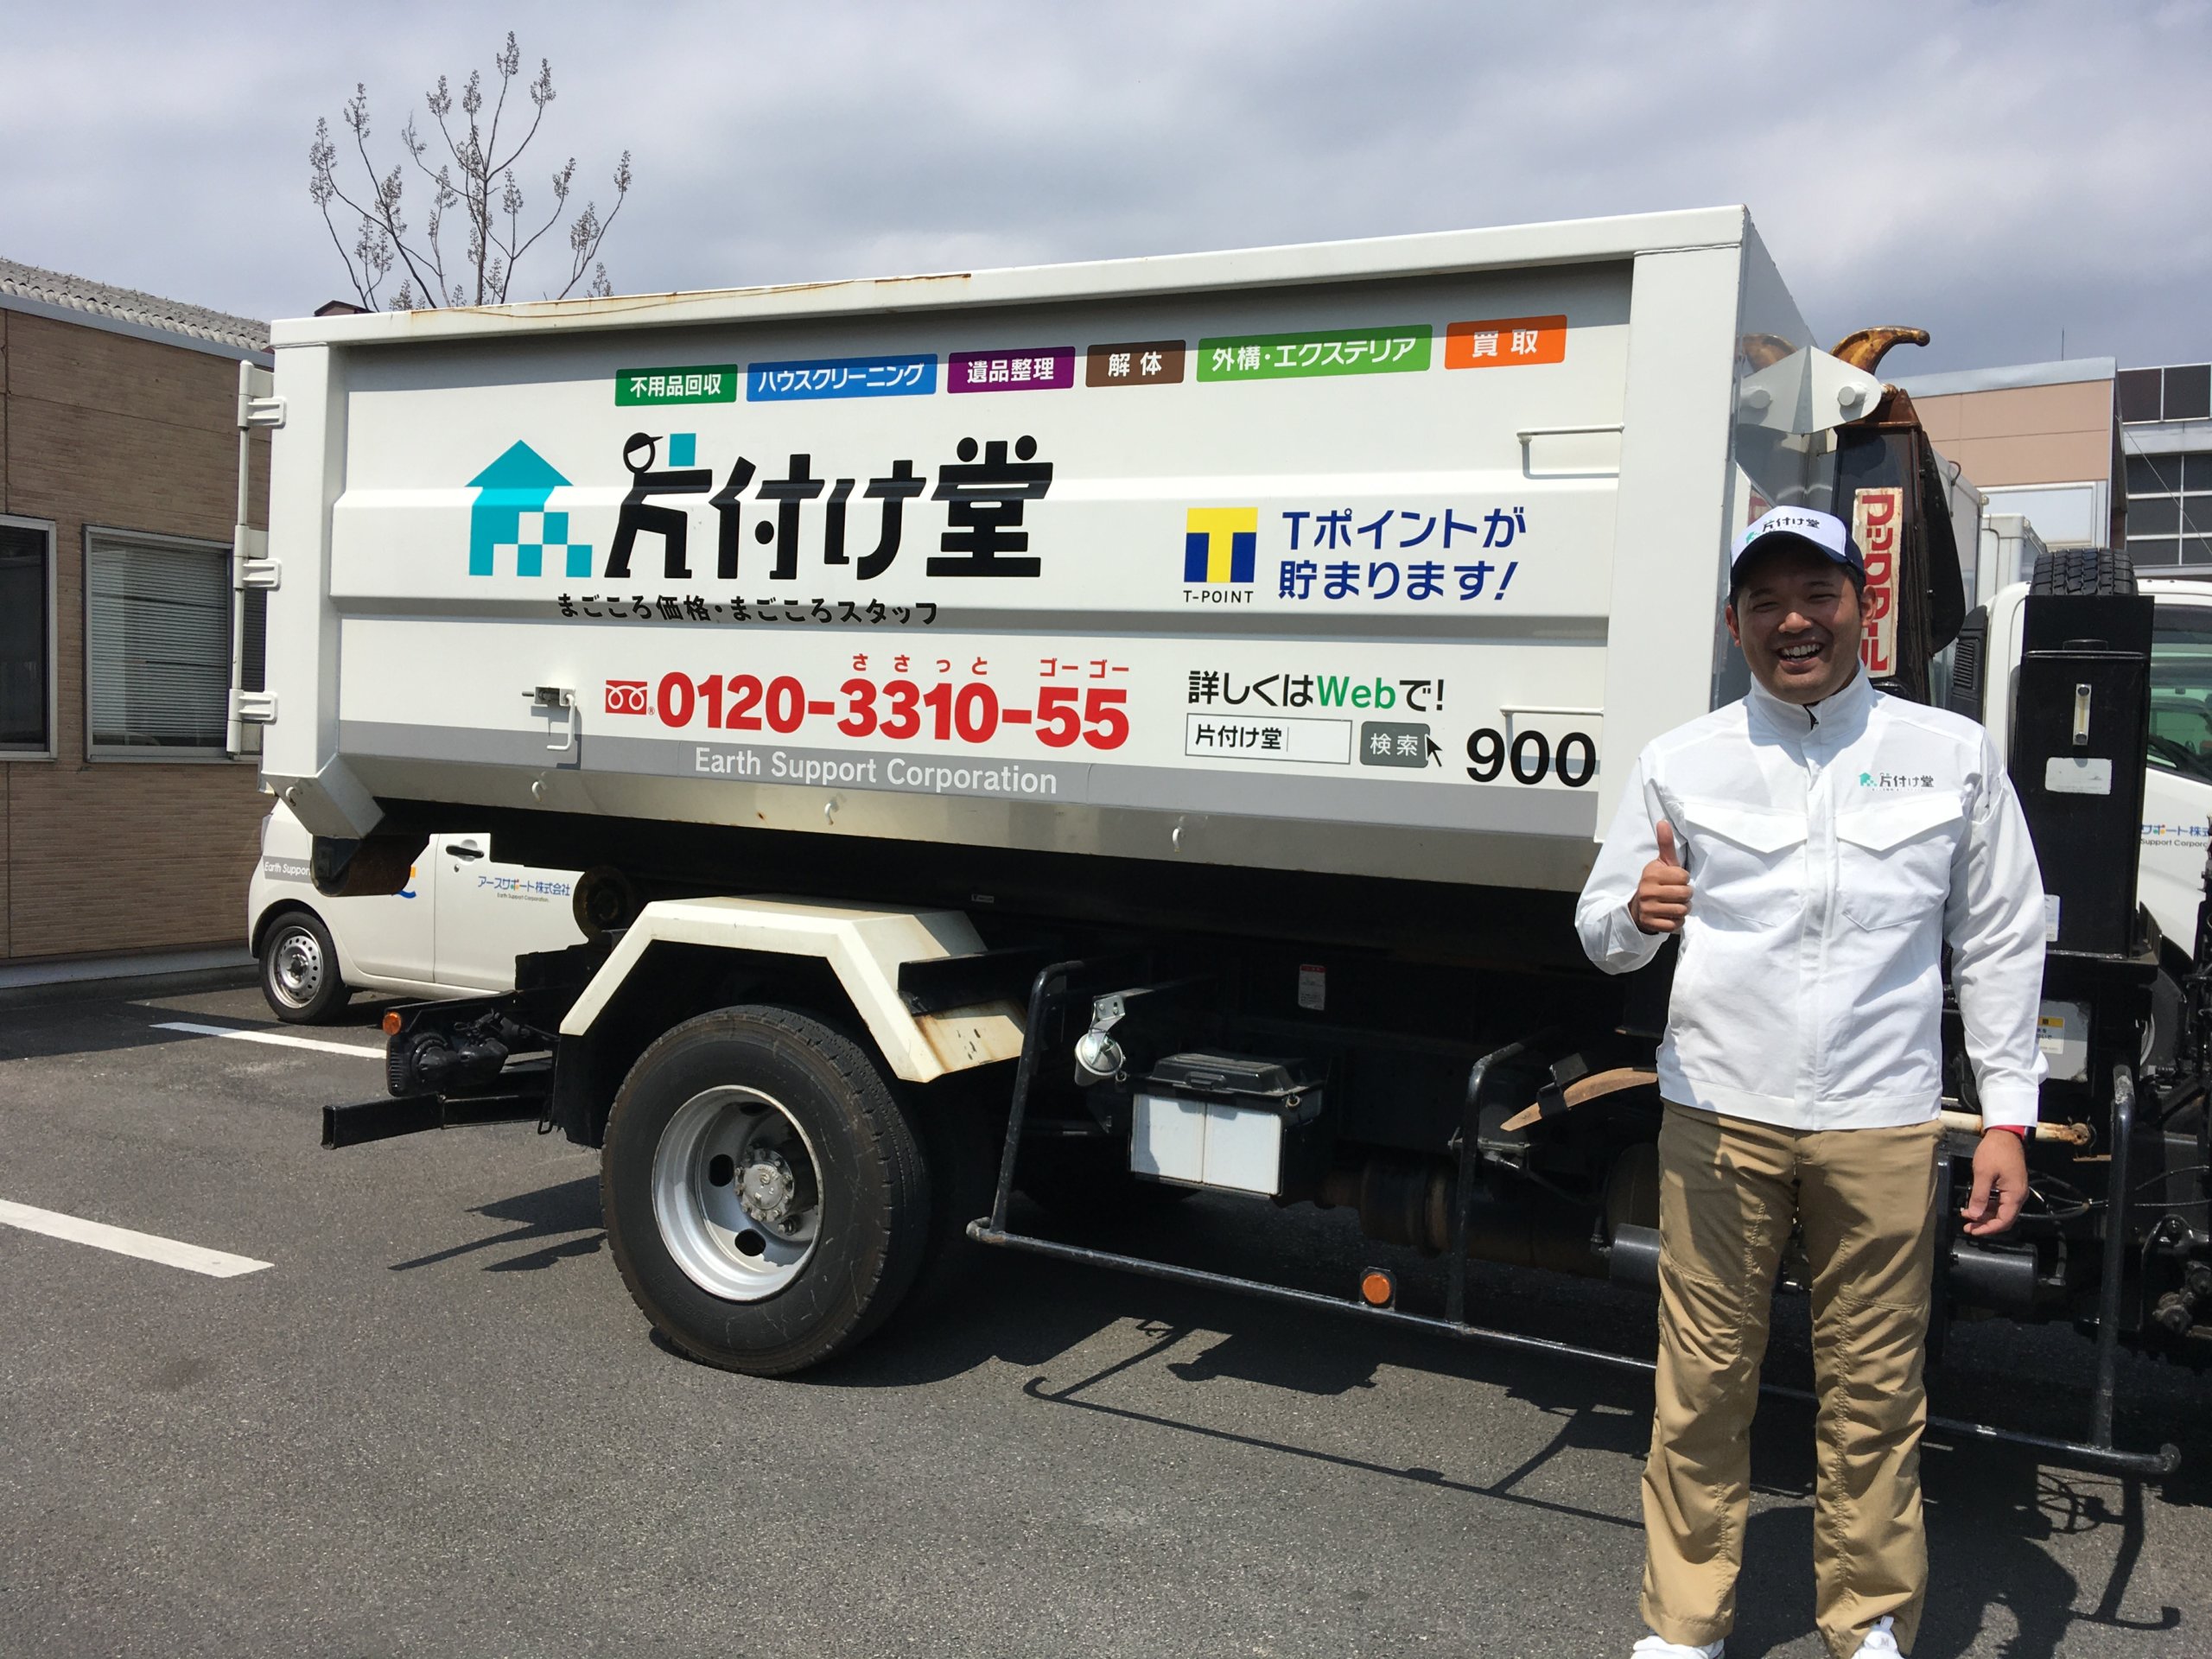 松江市の粗大ゴミ回収は片付け堂 第2日曜日の作業が可能になりました 不用品処分 島根 松江の不用品回収なら片付け堂